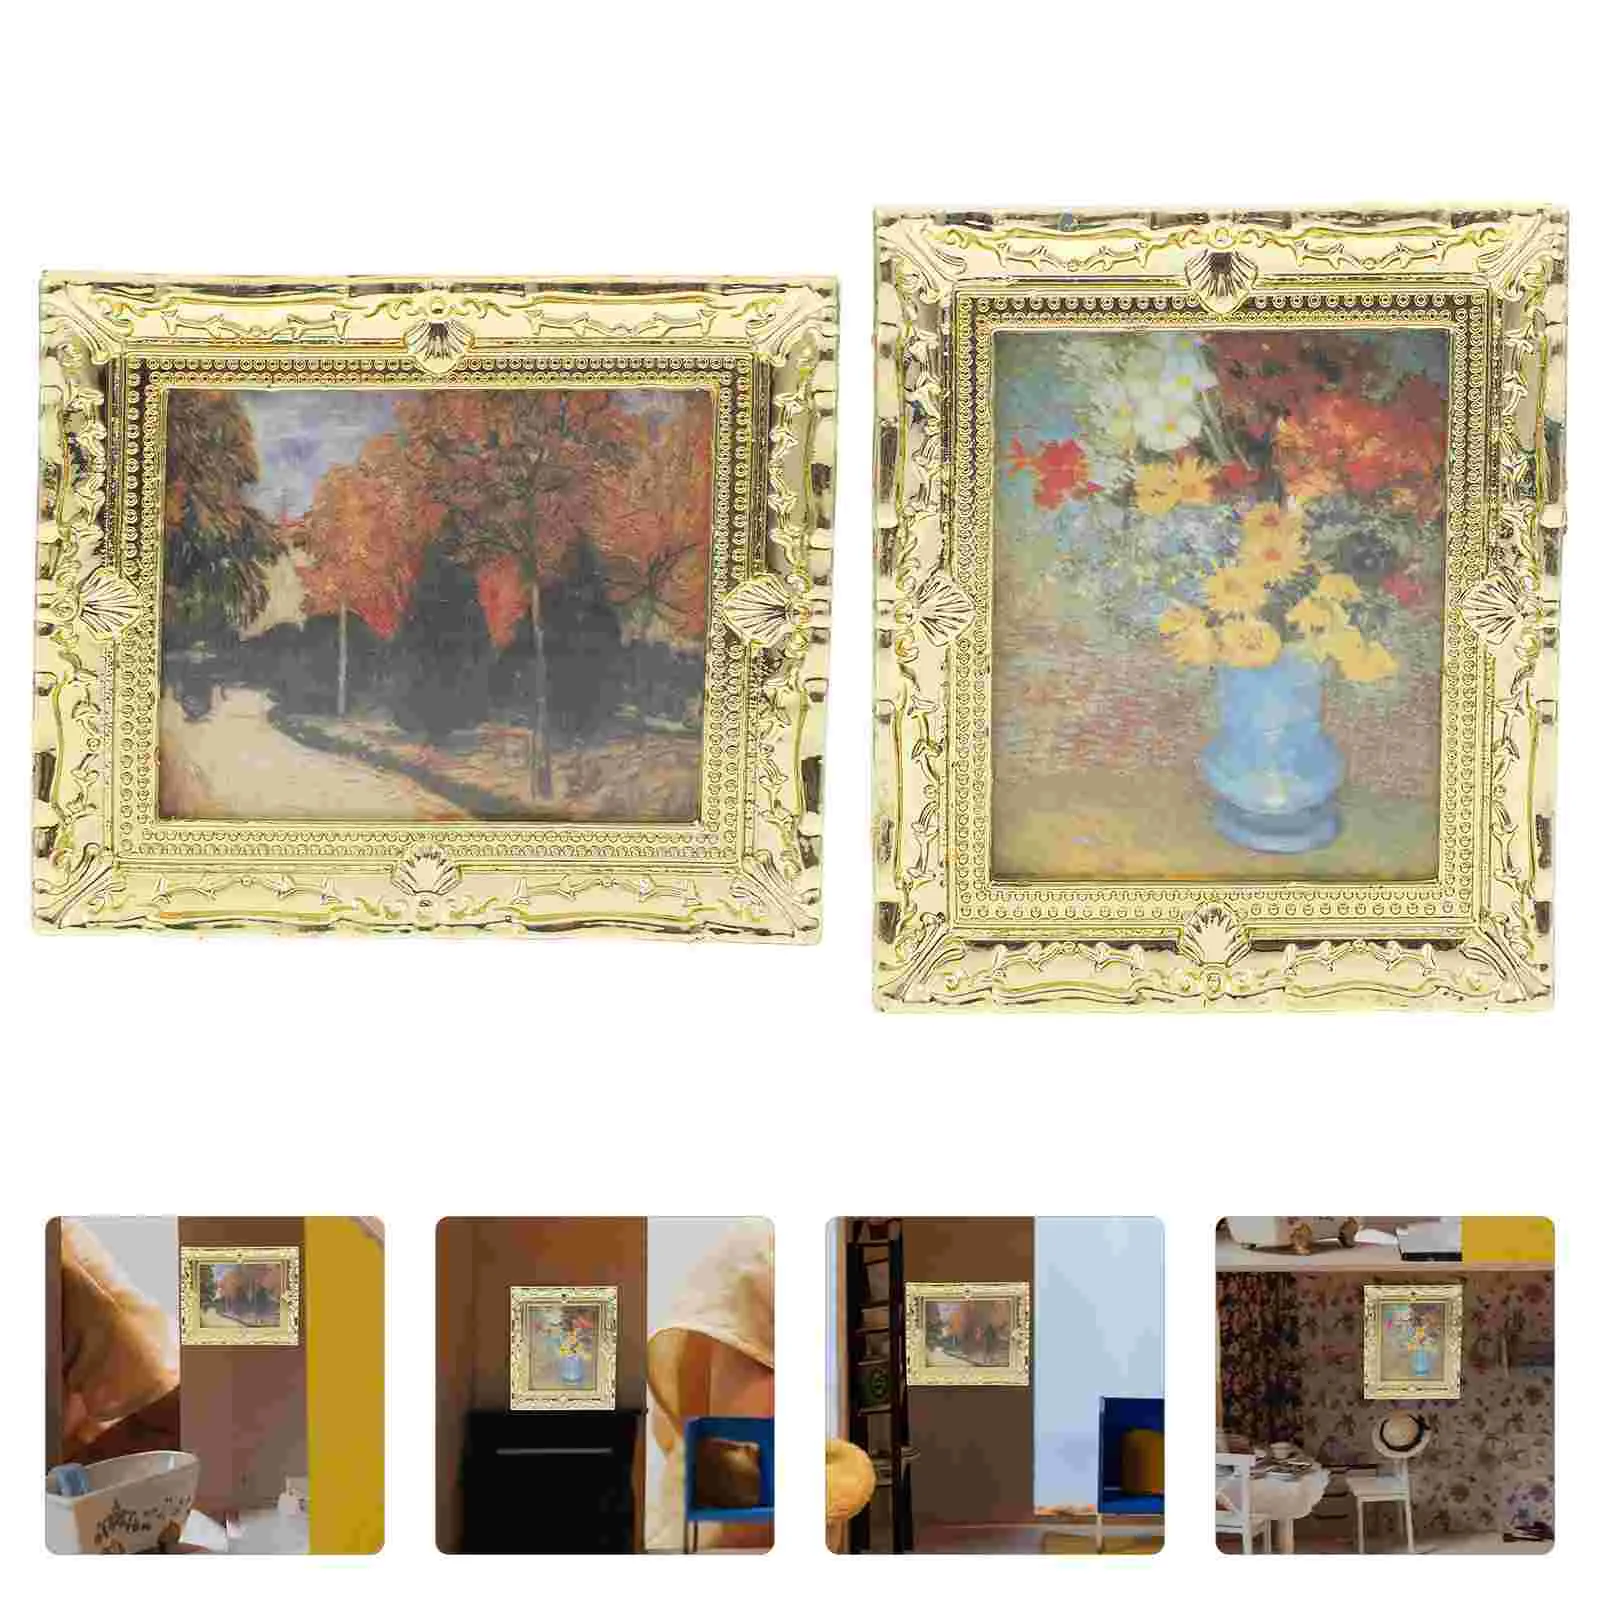 

Декоративная Золотая картина маслом, аксессуары для дома, миниатюрный мини-набор, миниатюрные фигурки